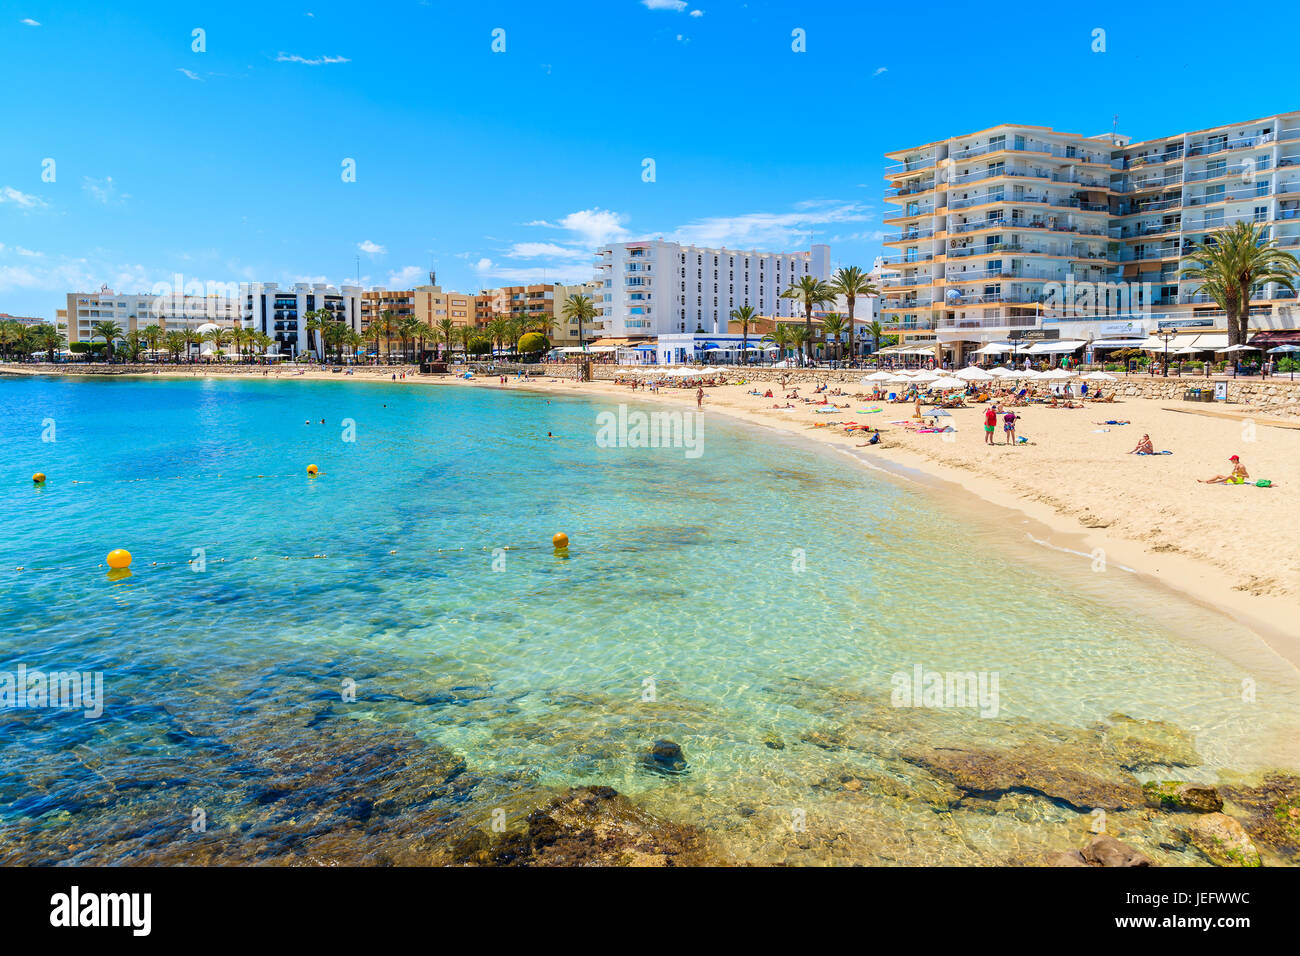 La isla de Ibiza, España - 18 de mayo de 2017: Los turistas tomando el sol en la playa de Santa Eulalia, Ibiza, España. Foto de stock